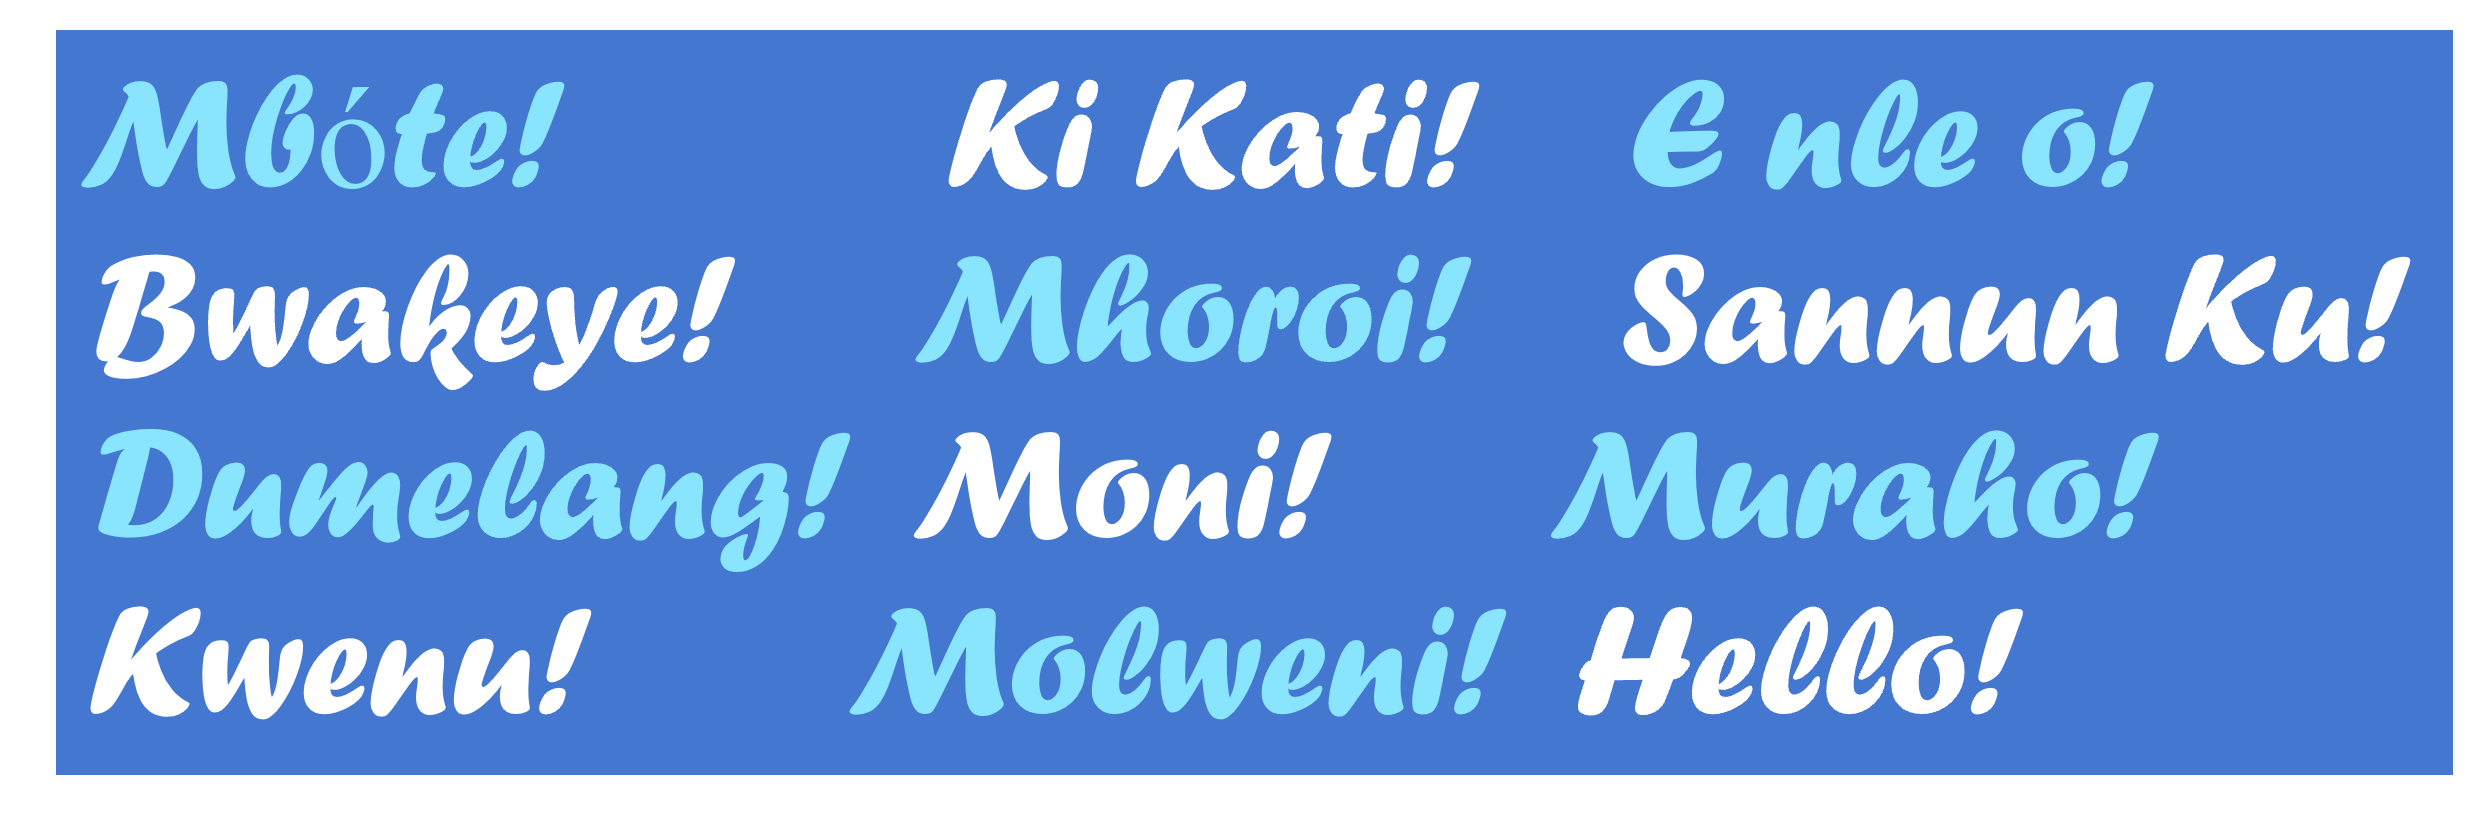 На изображението е показана английската фраза "Hello" и нейният превод на набора от африкански езици, описани в тази публикация в блога.